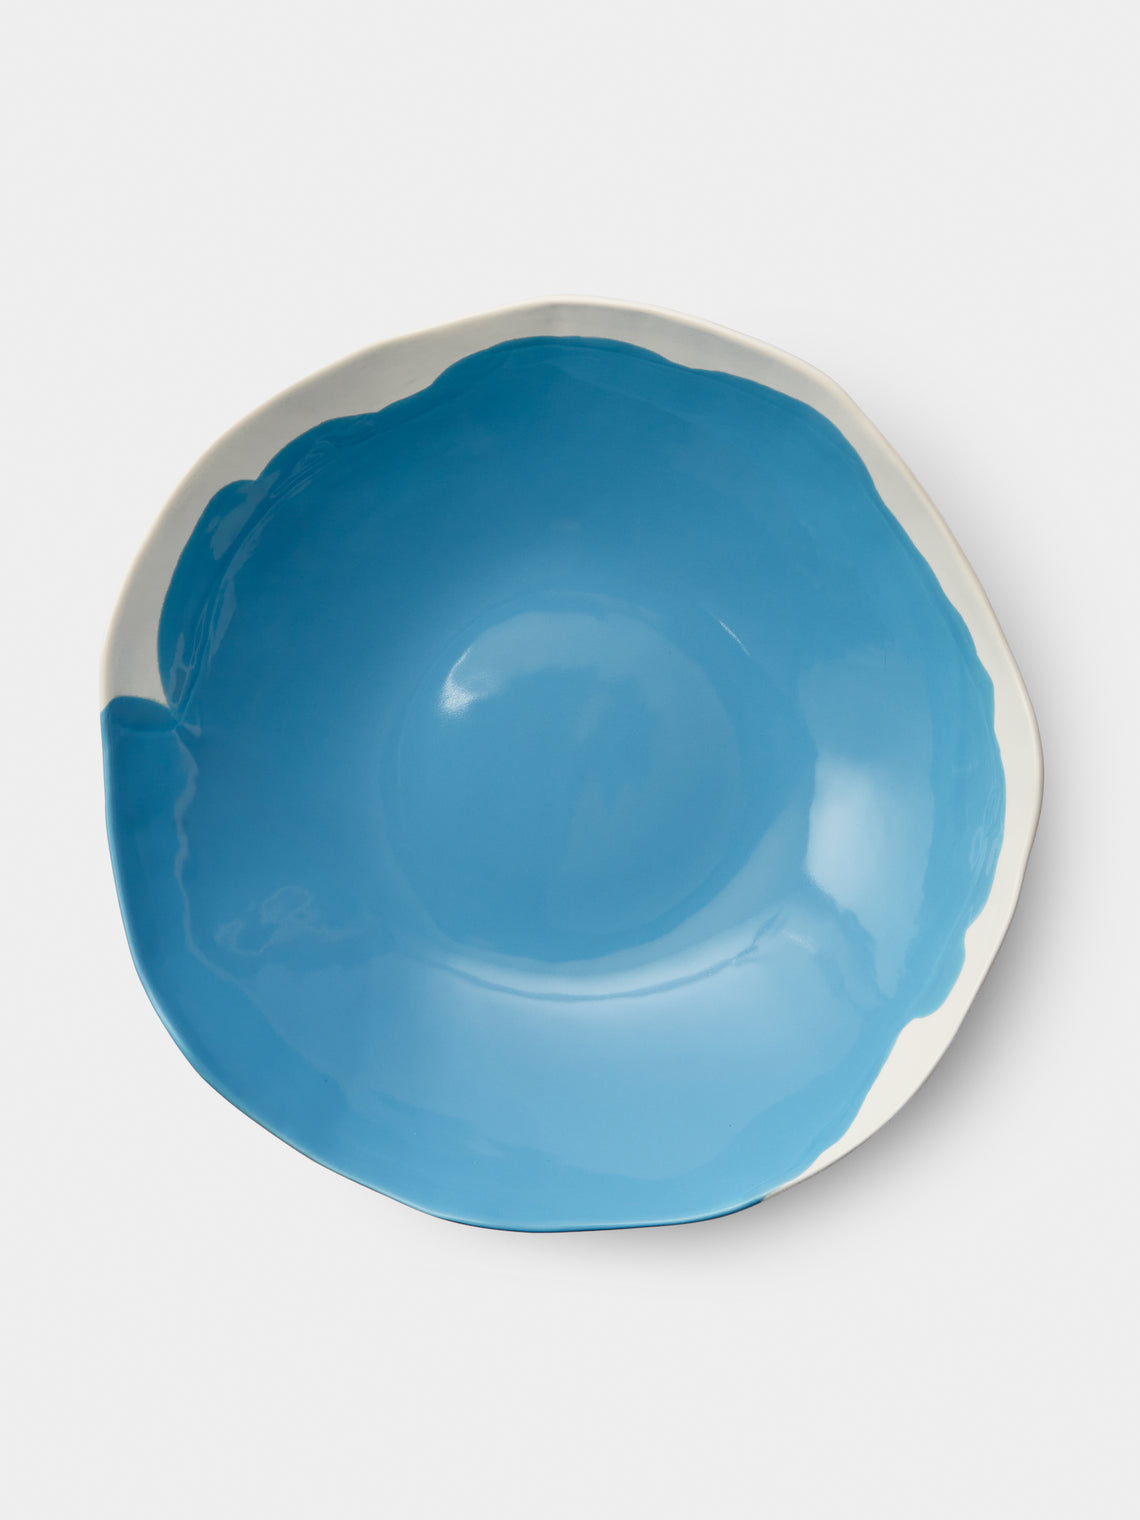 Pottery & Poetry - Hand-Glazed Porcelain Salad Bowl - Light Blue - ABASK